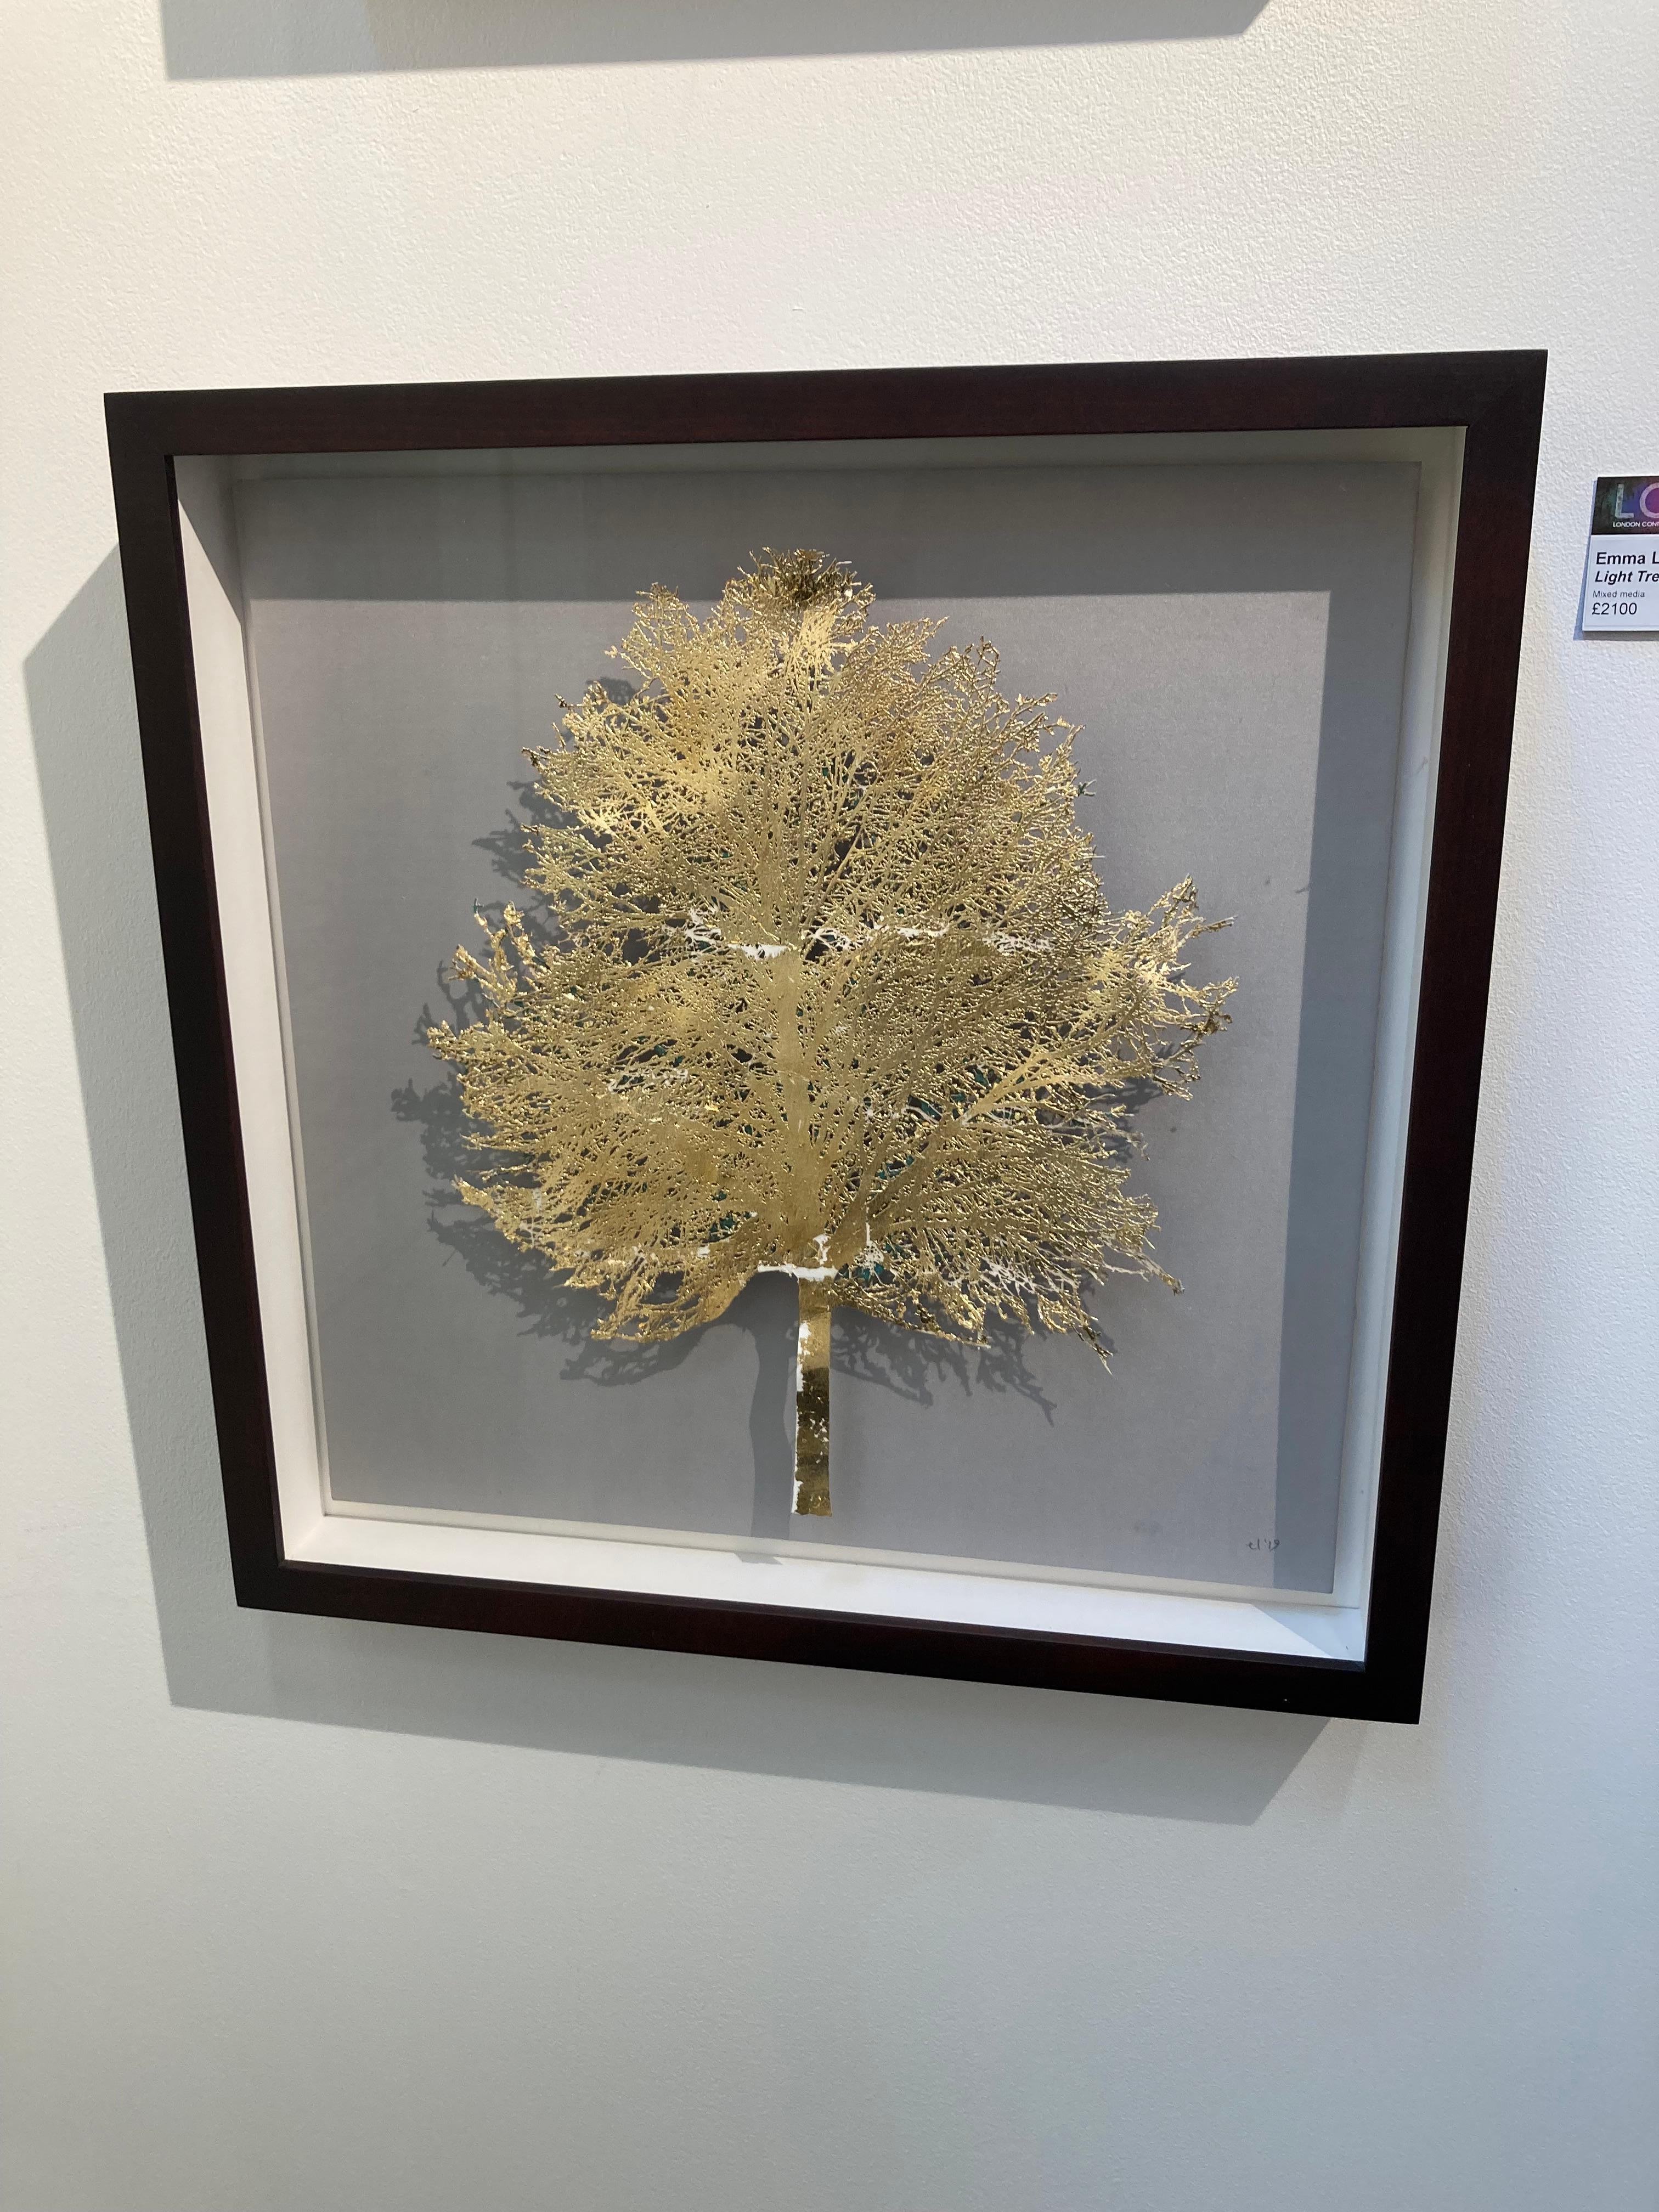 Light Tree – zeitgenössisches, gerahmtes, glasiertes Kunstwerk mit Laserschnitt und Mischtechnik (Zeitgenössisch), Mixed Media Art, von Emma Levine